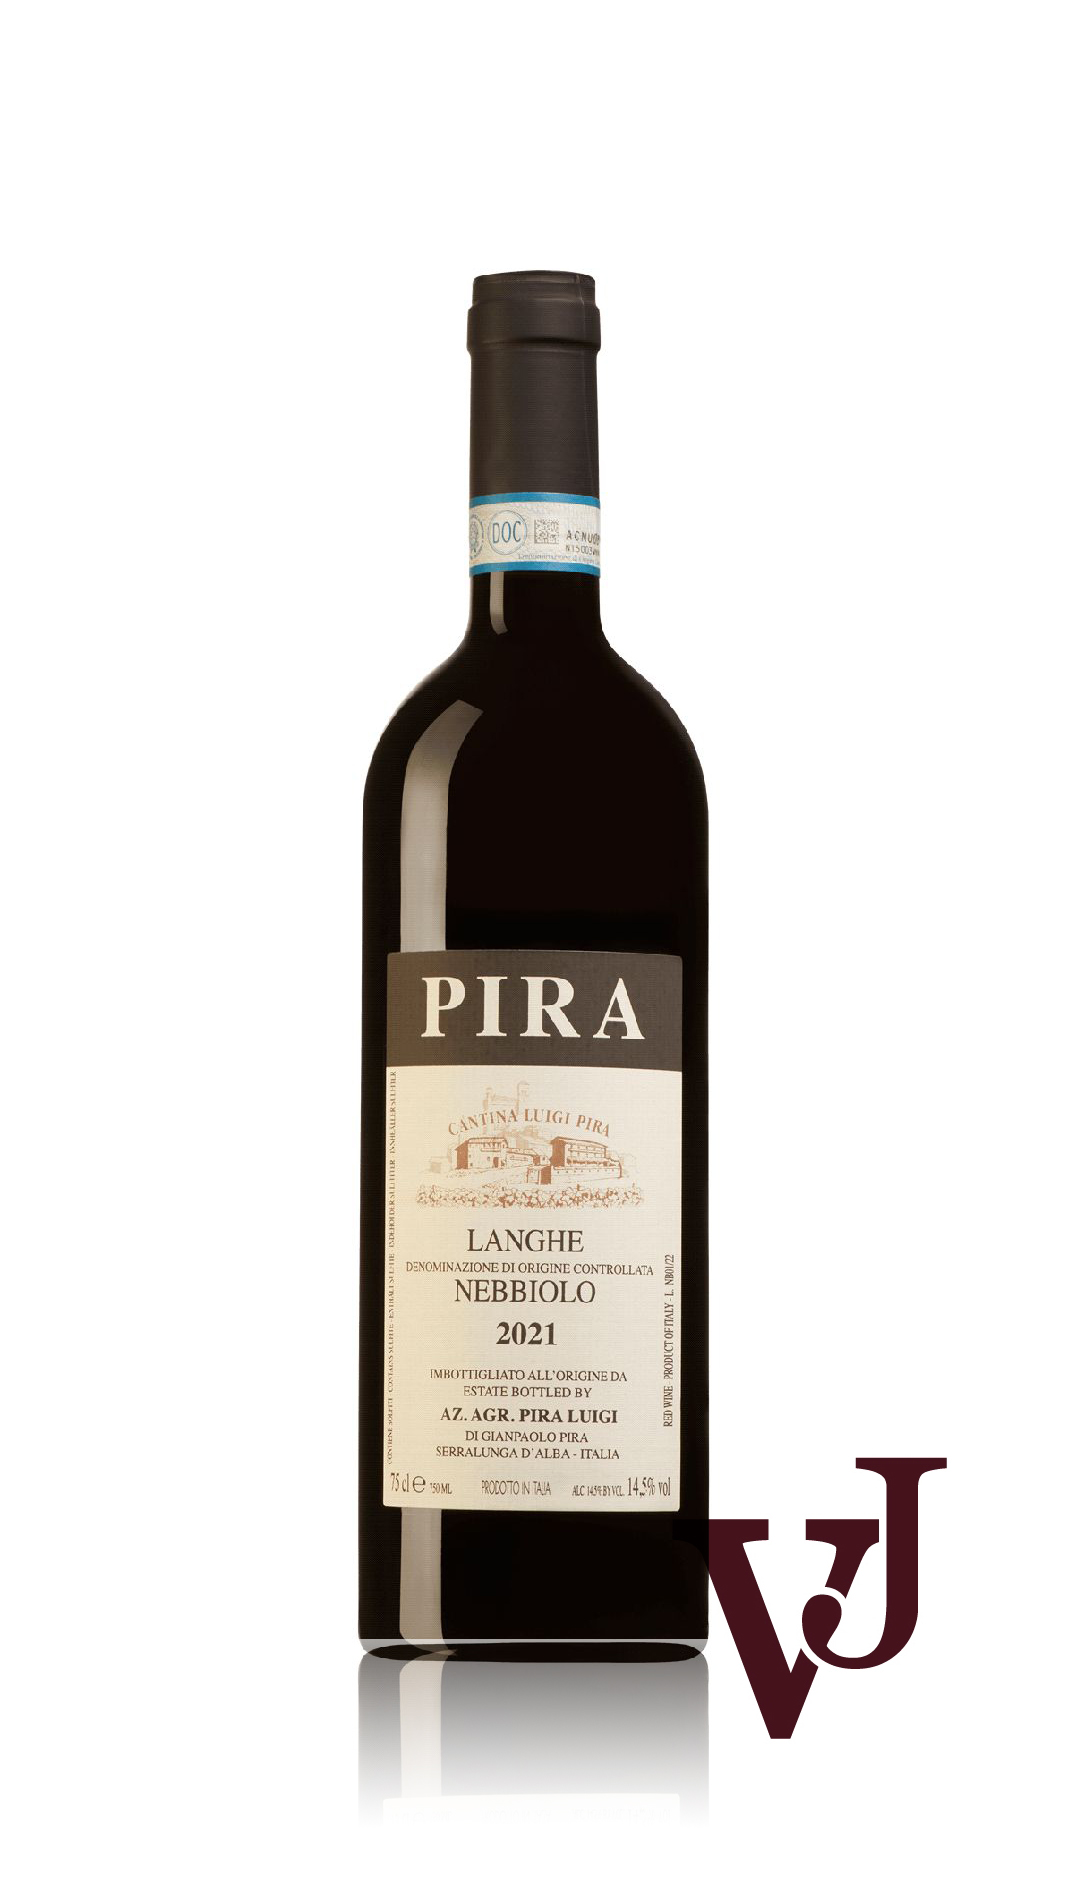 Vitt Vin - Langhe Nebbiolo Luigi Pira 2021 artikel nummer 9513601 från producenten Luigi Pira från området Italien